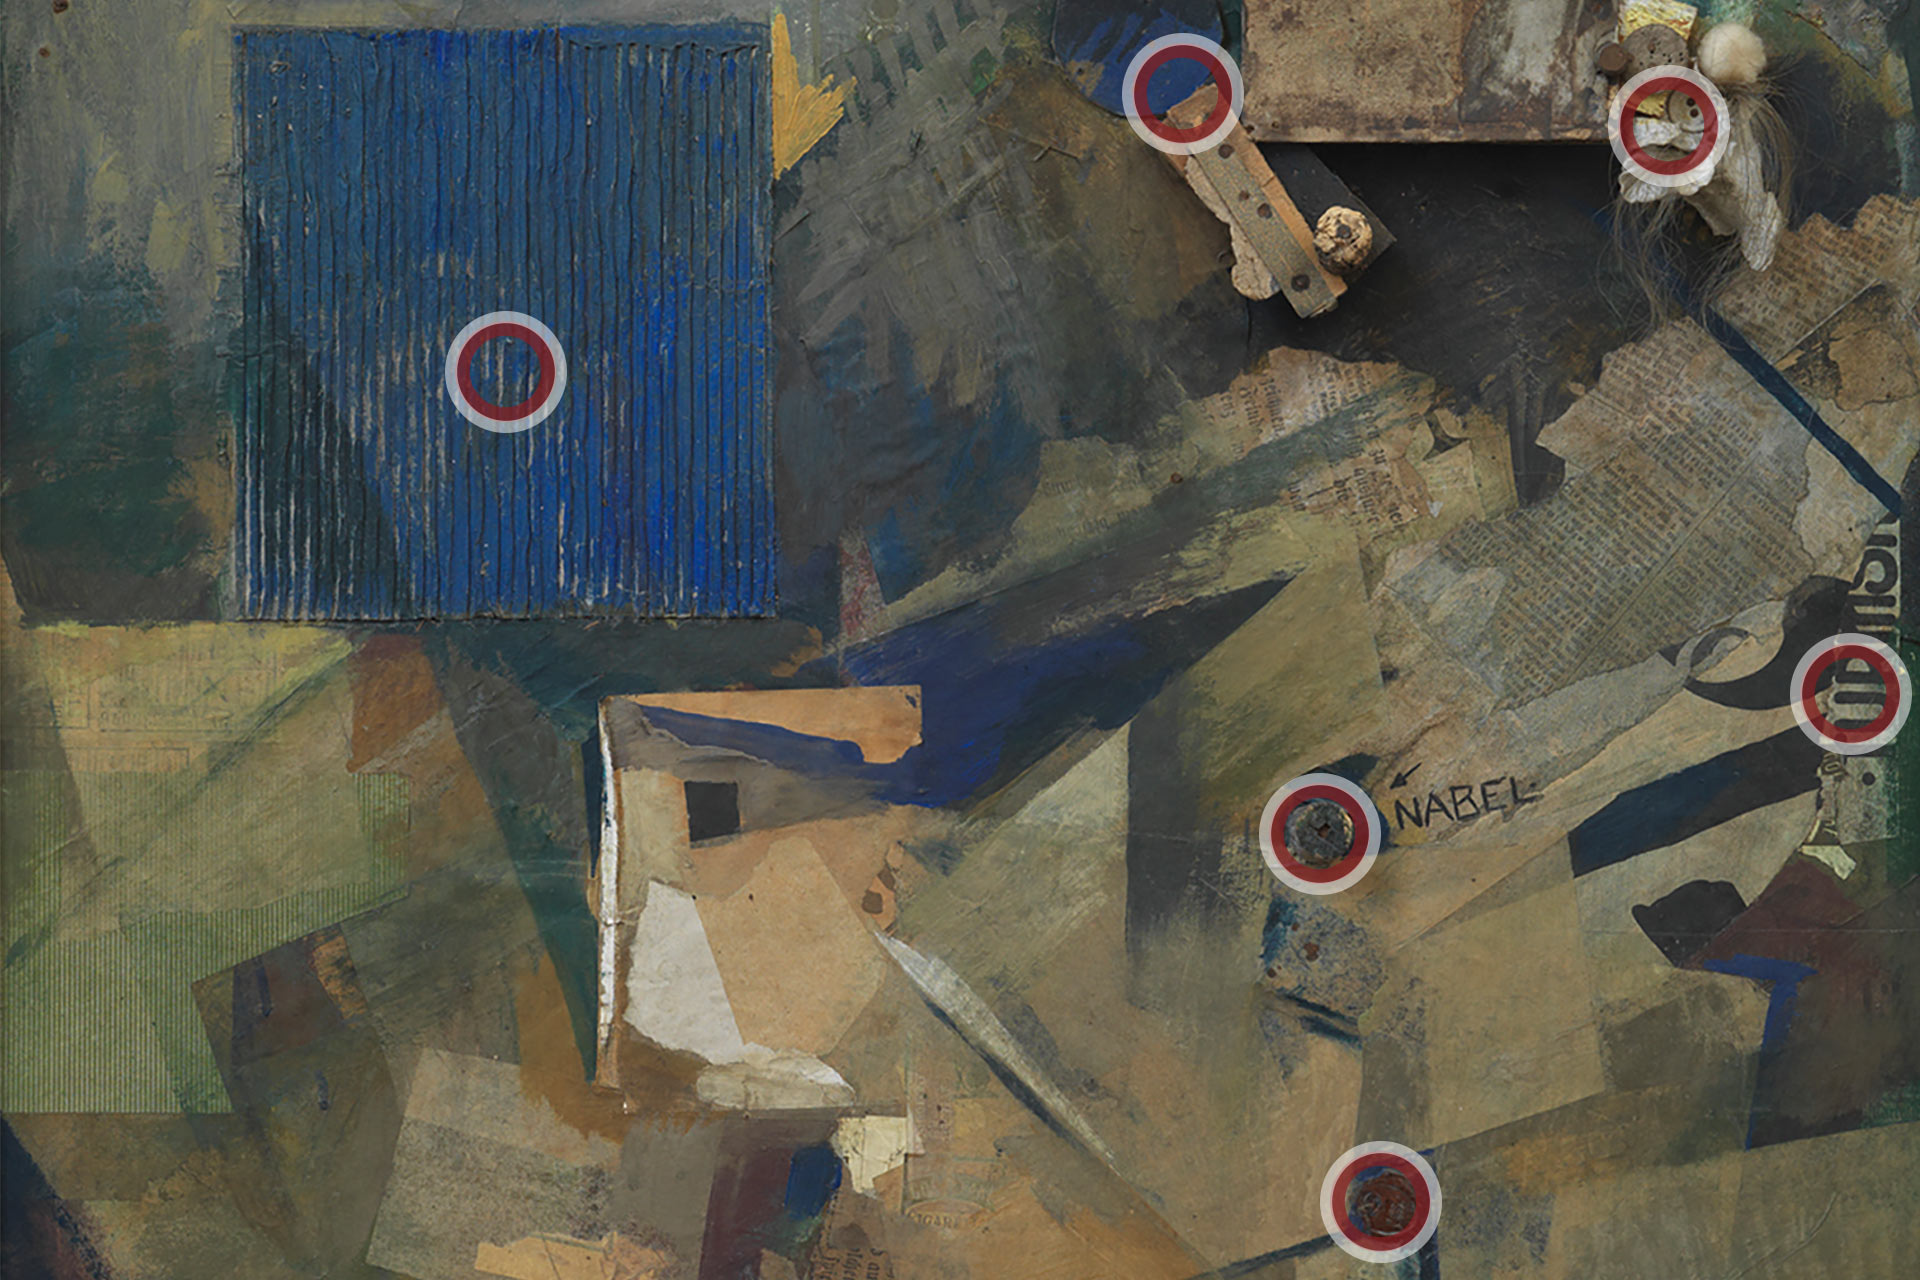 Abbildung des Werks Merzbild 21b von Kurt Schwitters mit verschiedenen Zoom-Punkten, hinter denen sich spannende Details verbergen.